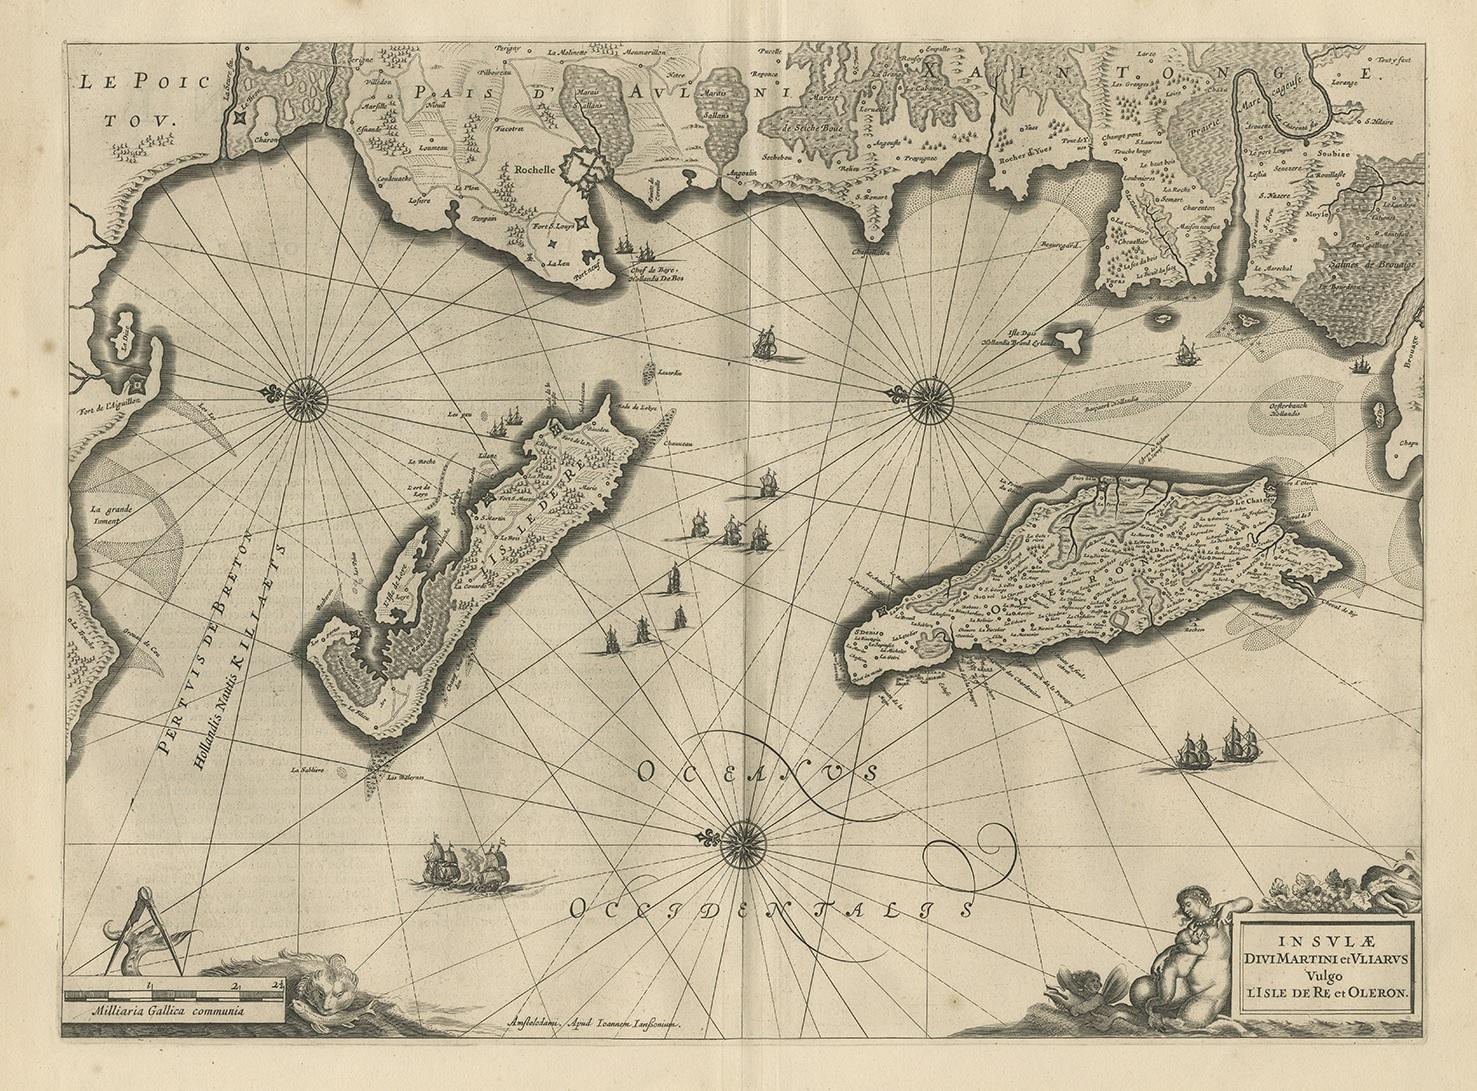 Antike Karte 'Insulae Divimartini et Vliarus vulgo l'isle de Re et Oleron'. Dekorative Karte der Île de Ré und der Île d'Oléron. Diese Karte stammt aus dem 